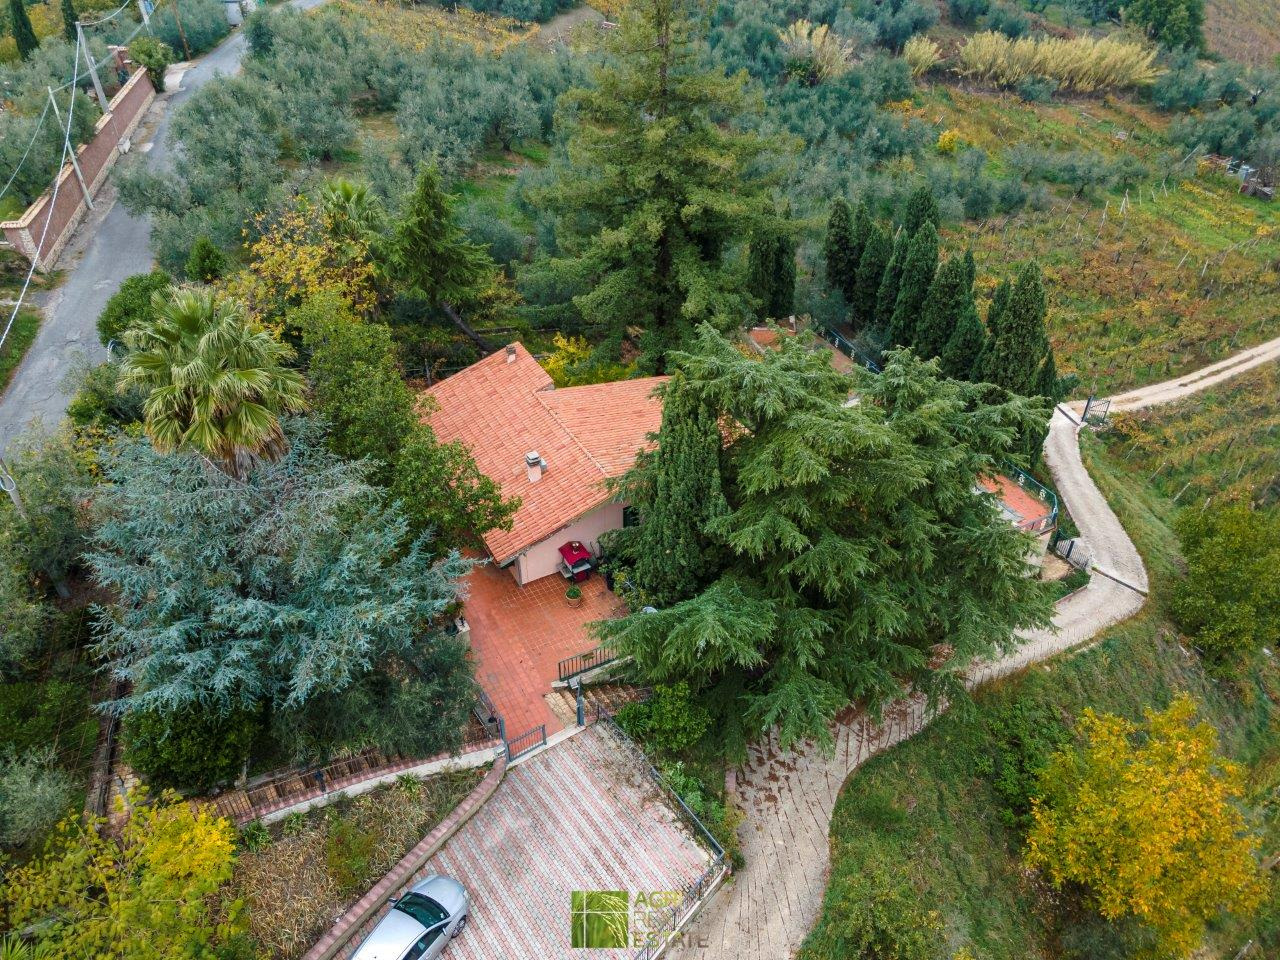 Villa in vendita a Olevano Romano, 8 locali, prezzo € 370.000 | CambioCasa.it